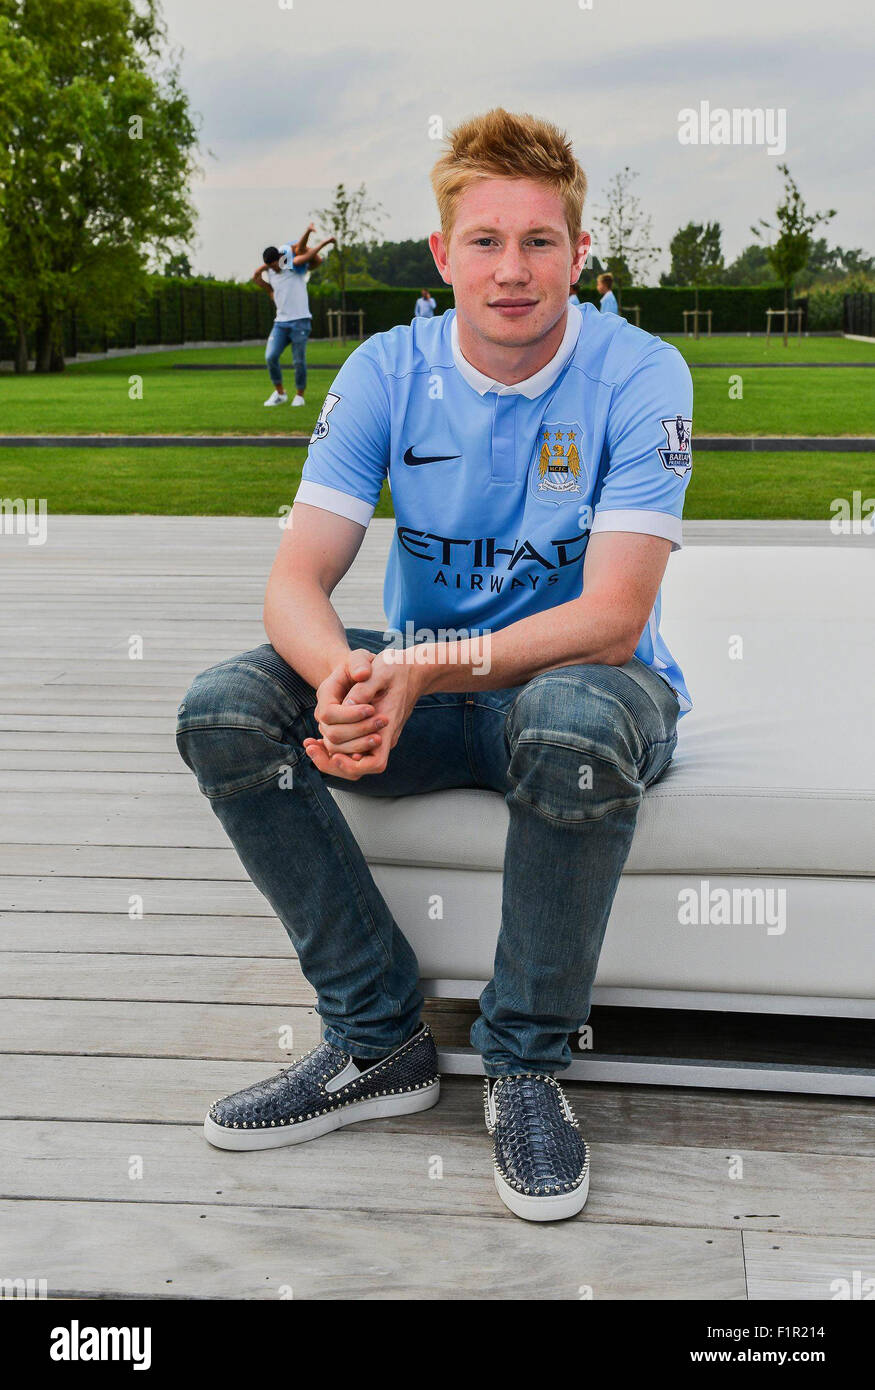 Manchester, UK. Août 31, 2015. Nouveau joueur Manchester City Kevin De Bruyne maillot l'équipe en action Sport/Alamy Live News Photo Stock - Alamy